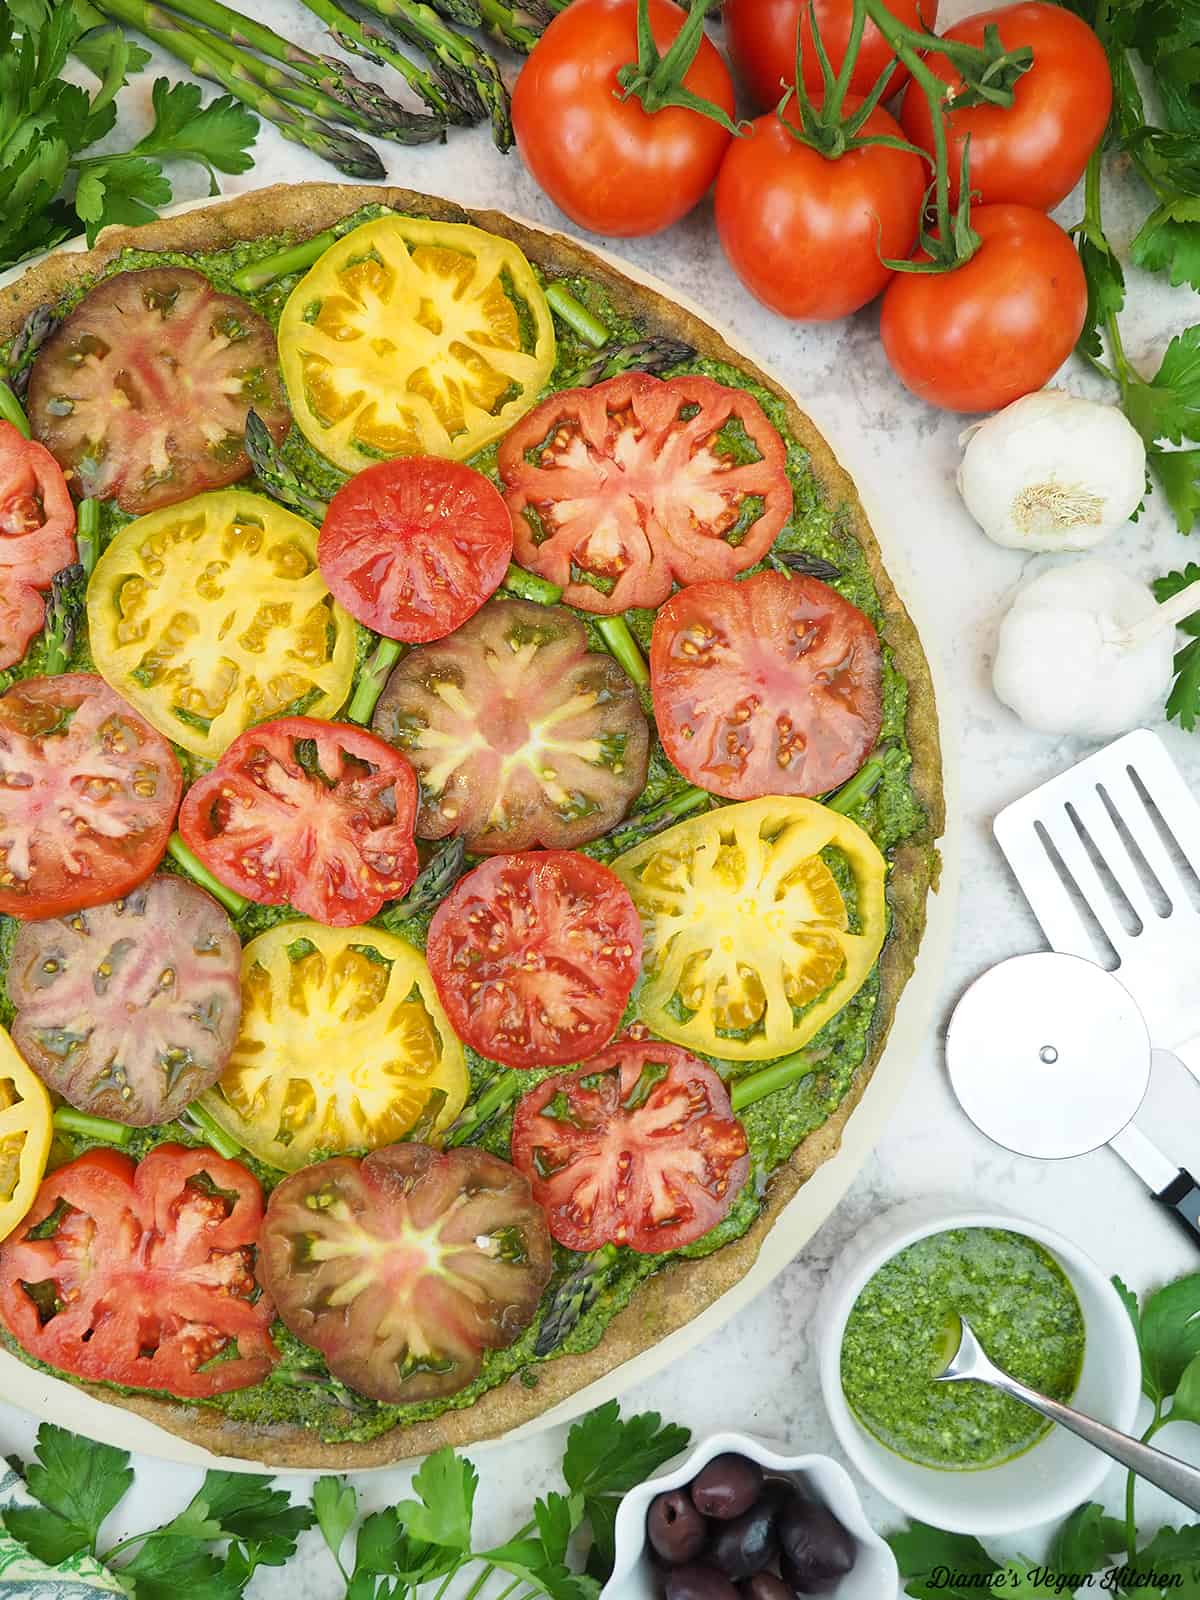 Tarte au pesto grillée entourée de tomates, d'ail, de pesto, d'olives et d'un coupe-pizza